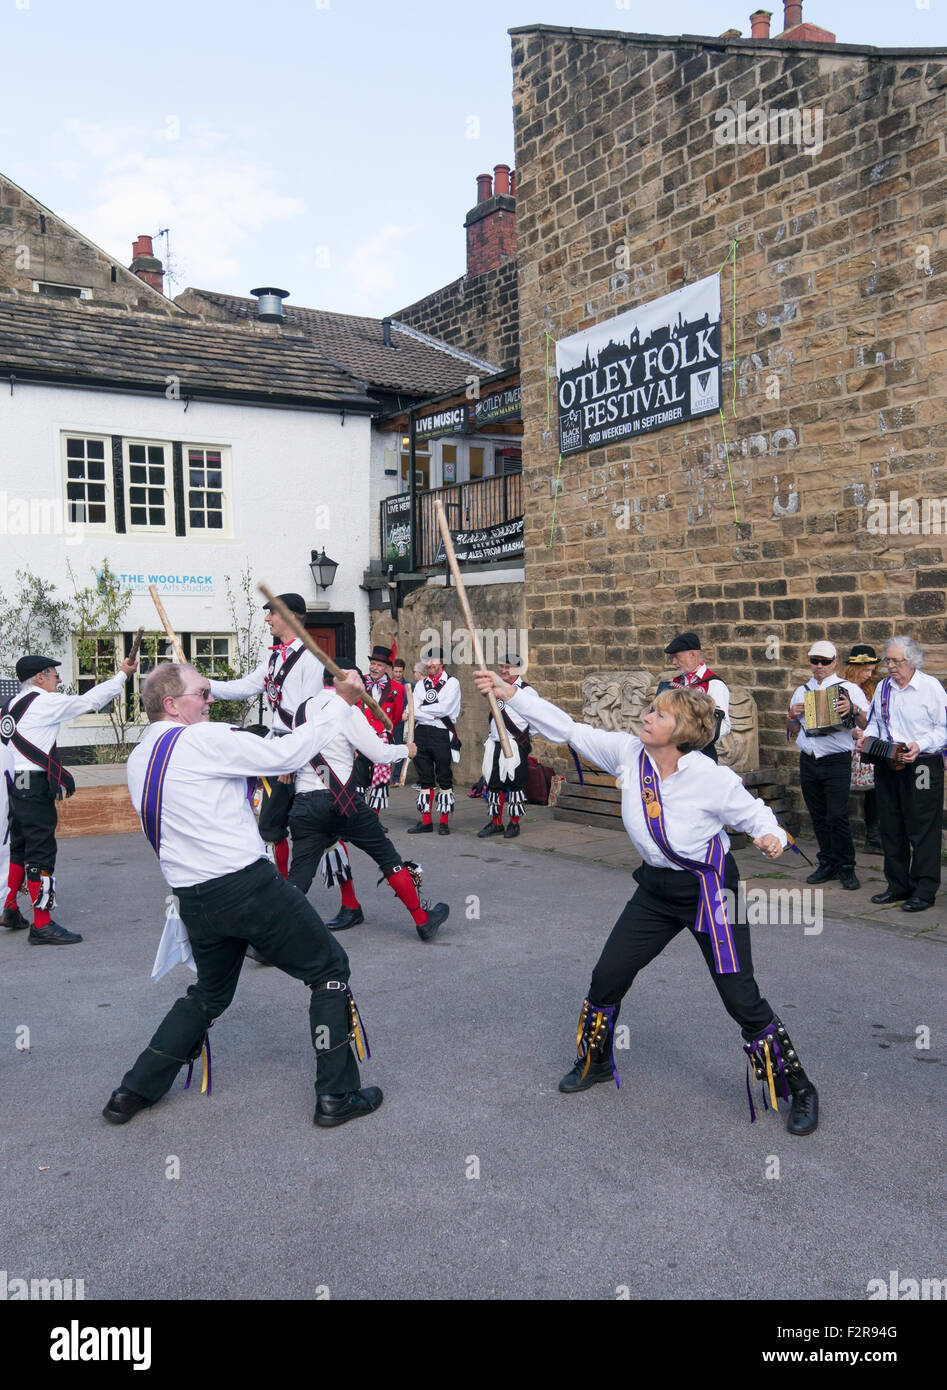 Kern Morris dance à Otley Folk Festival 2015, West Yorkshire, England, UK Banque D'Images